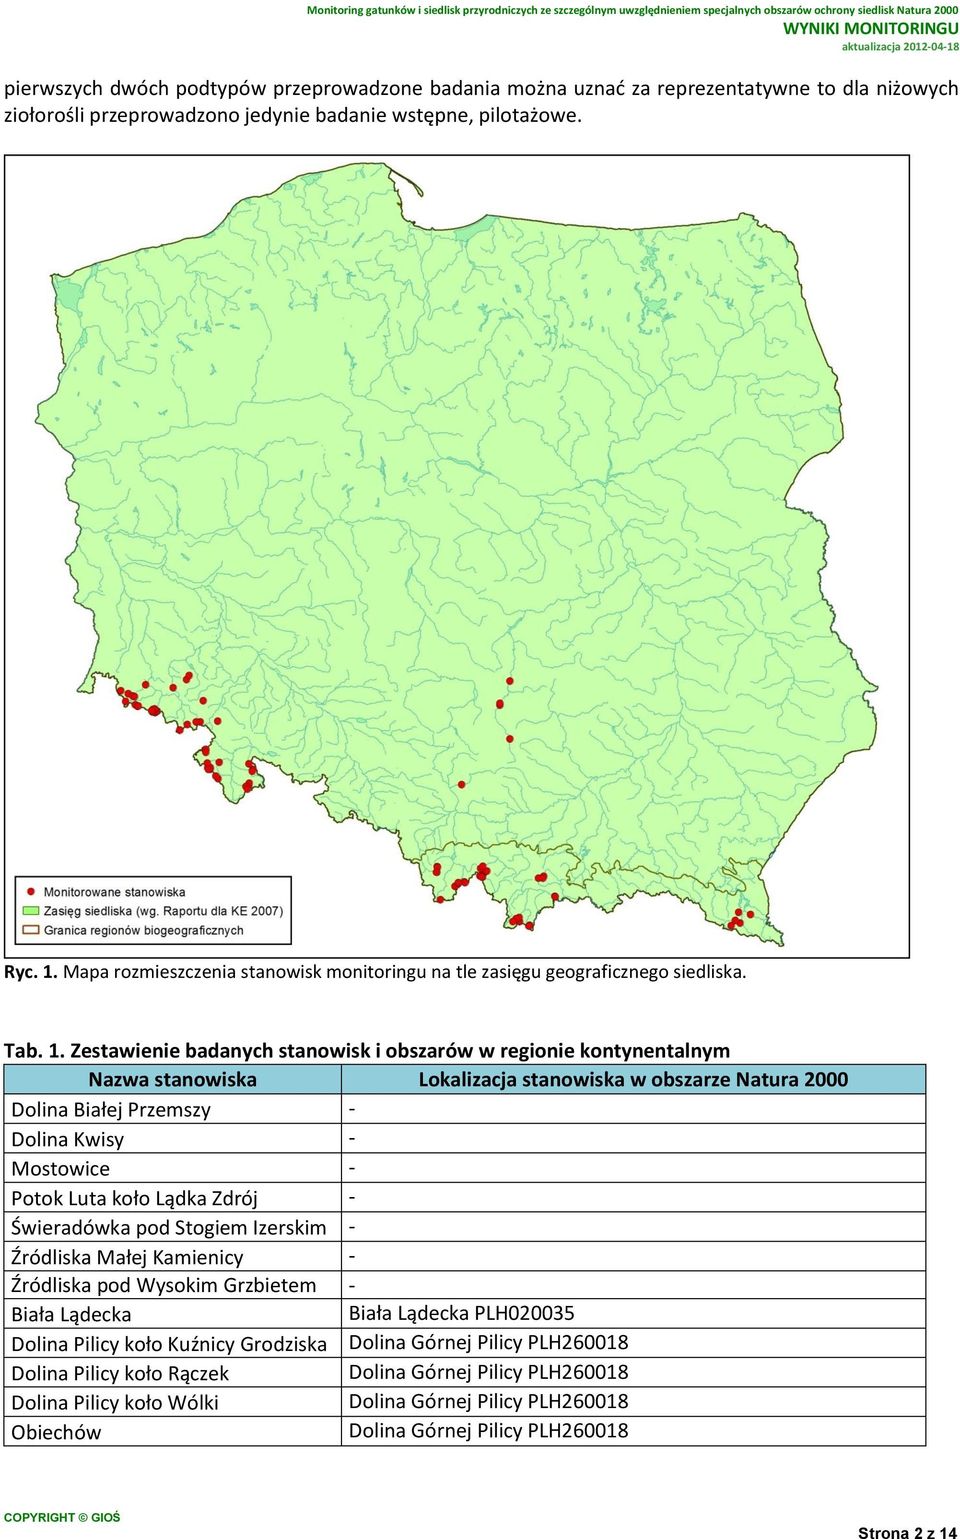 Zestawienie badanych stanowisk i obszarów w regionie kontynentalnym Nazwa stanowiska Lokalizacja stanowiska w obszarze Natura 2000 Dolina Białej Przemszy - Dolina Kwisy - Mostowice - Potok Luta koło